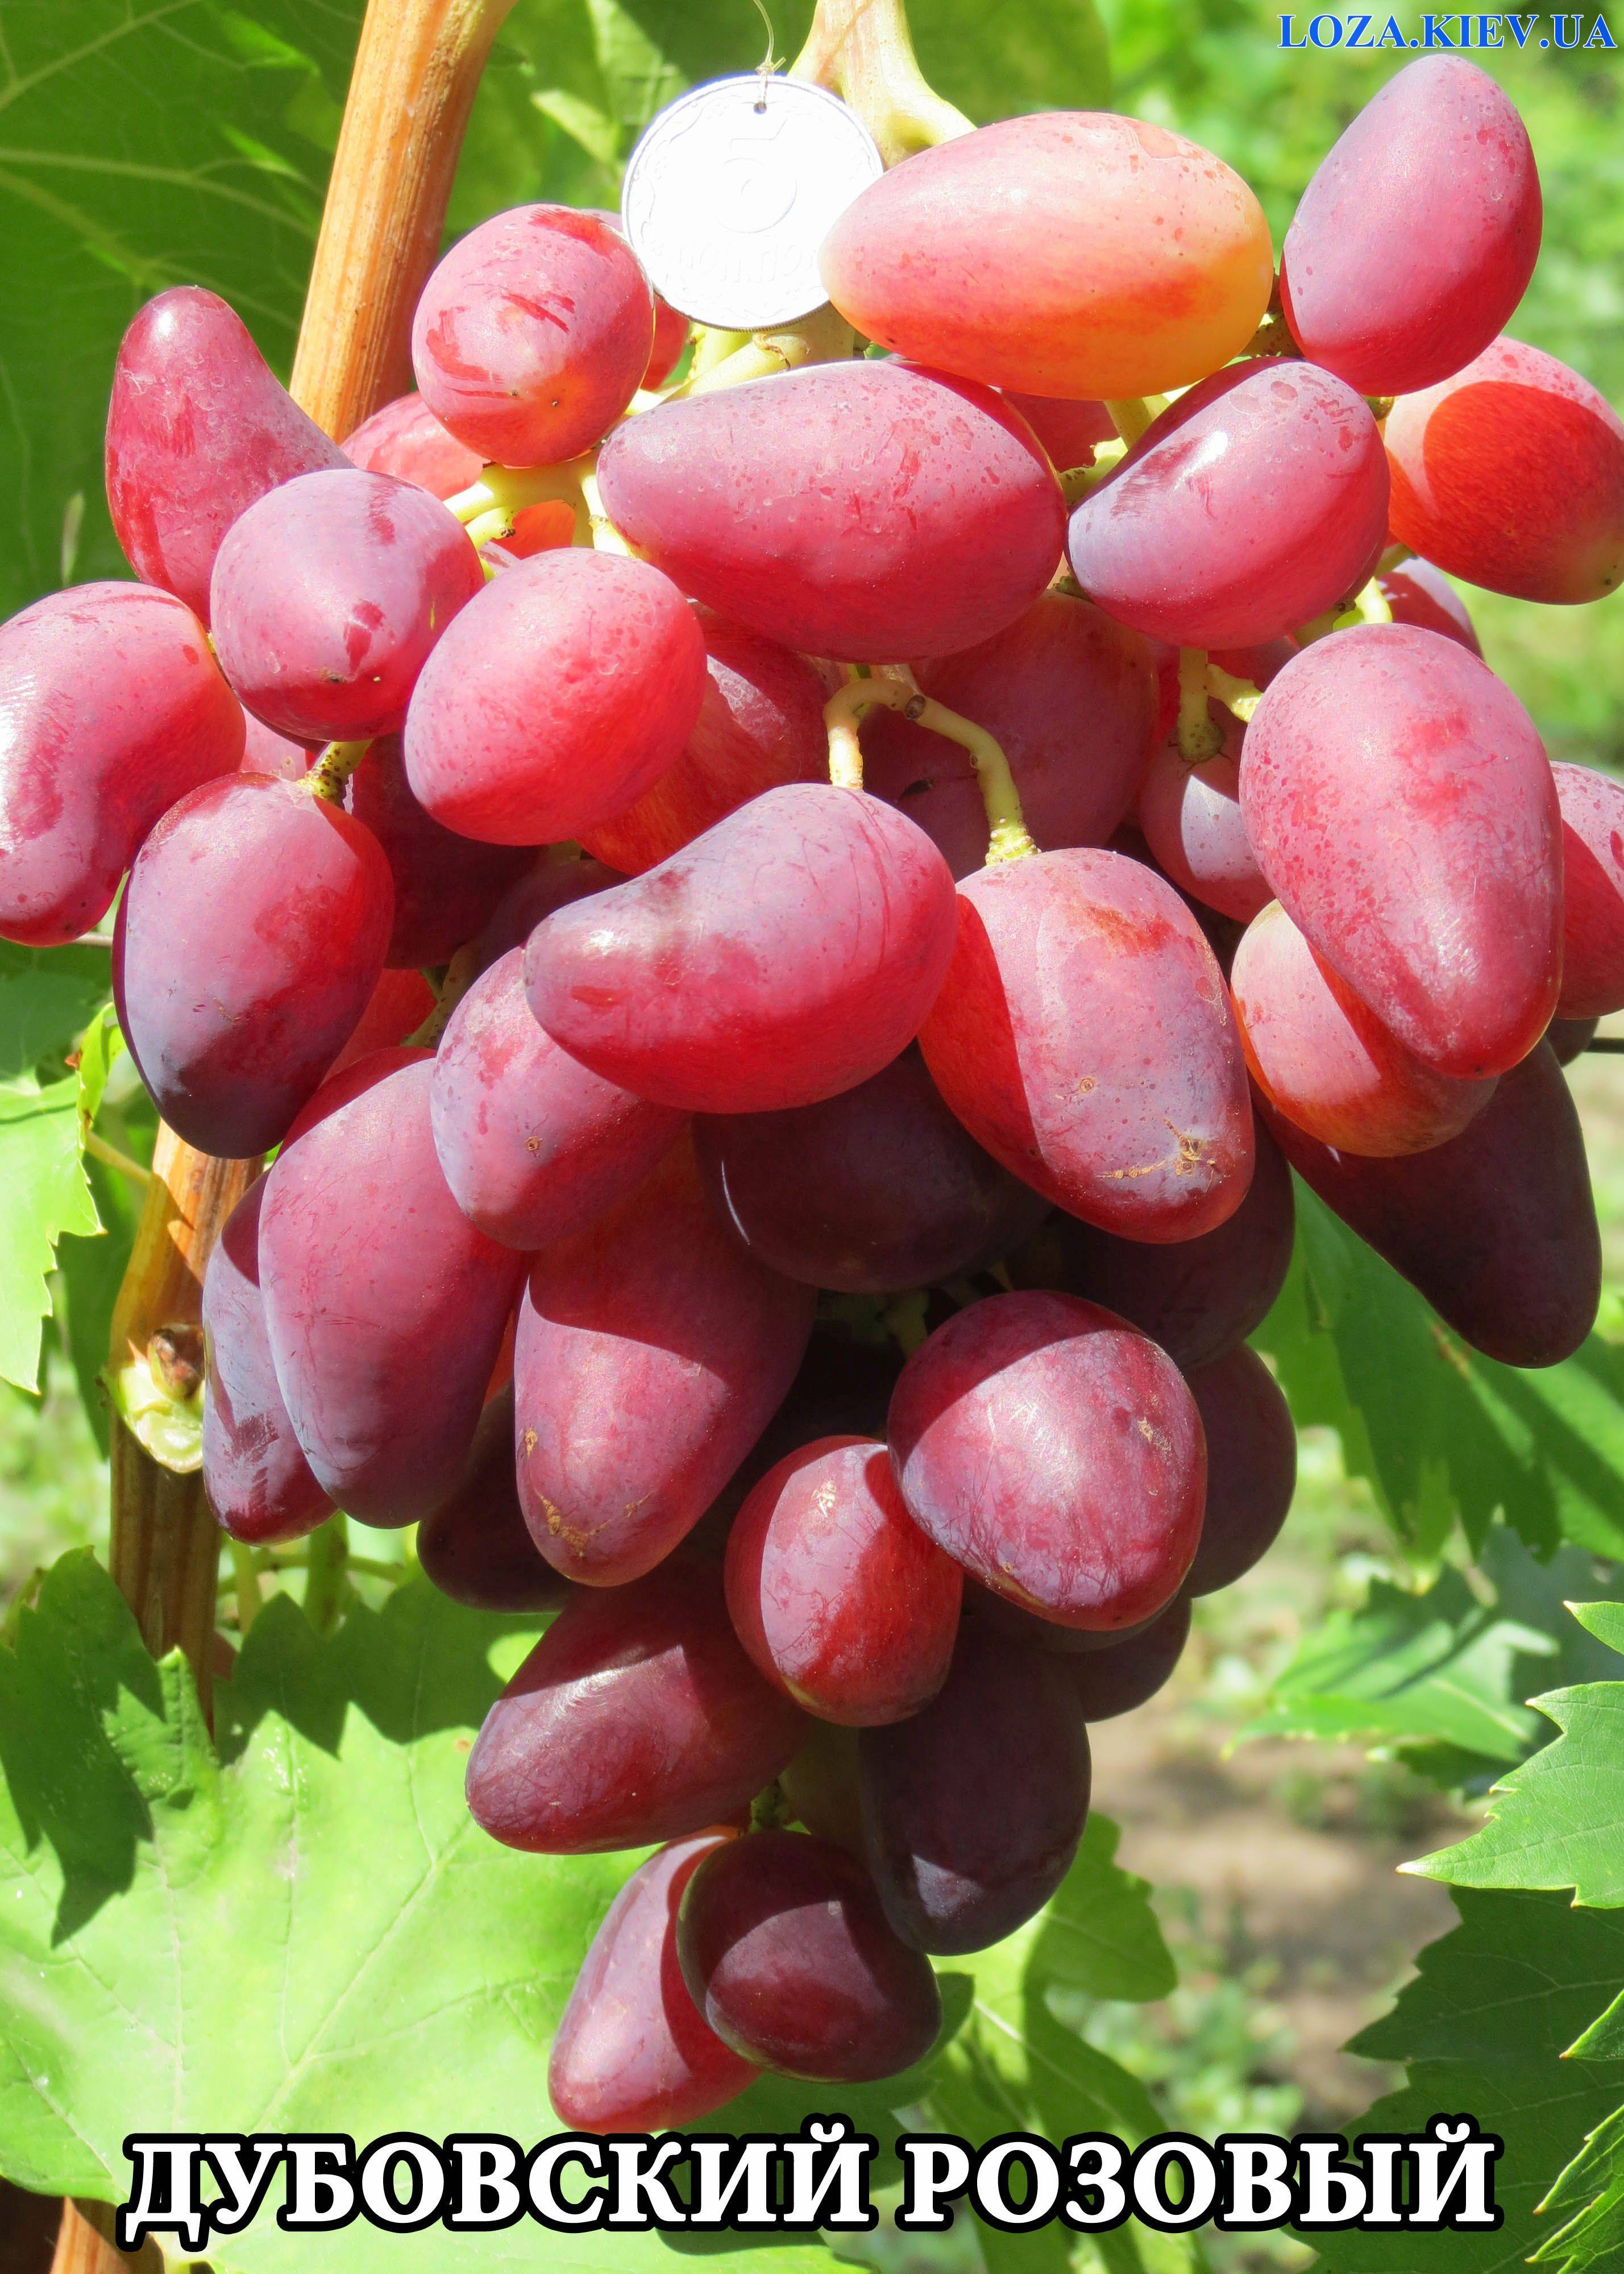 Виноград дубовский розовый: описание сорта, его характеристики и фото selo.guru — интернет портал о сельском хозяйстве